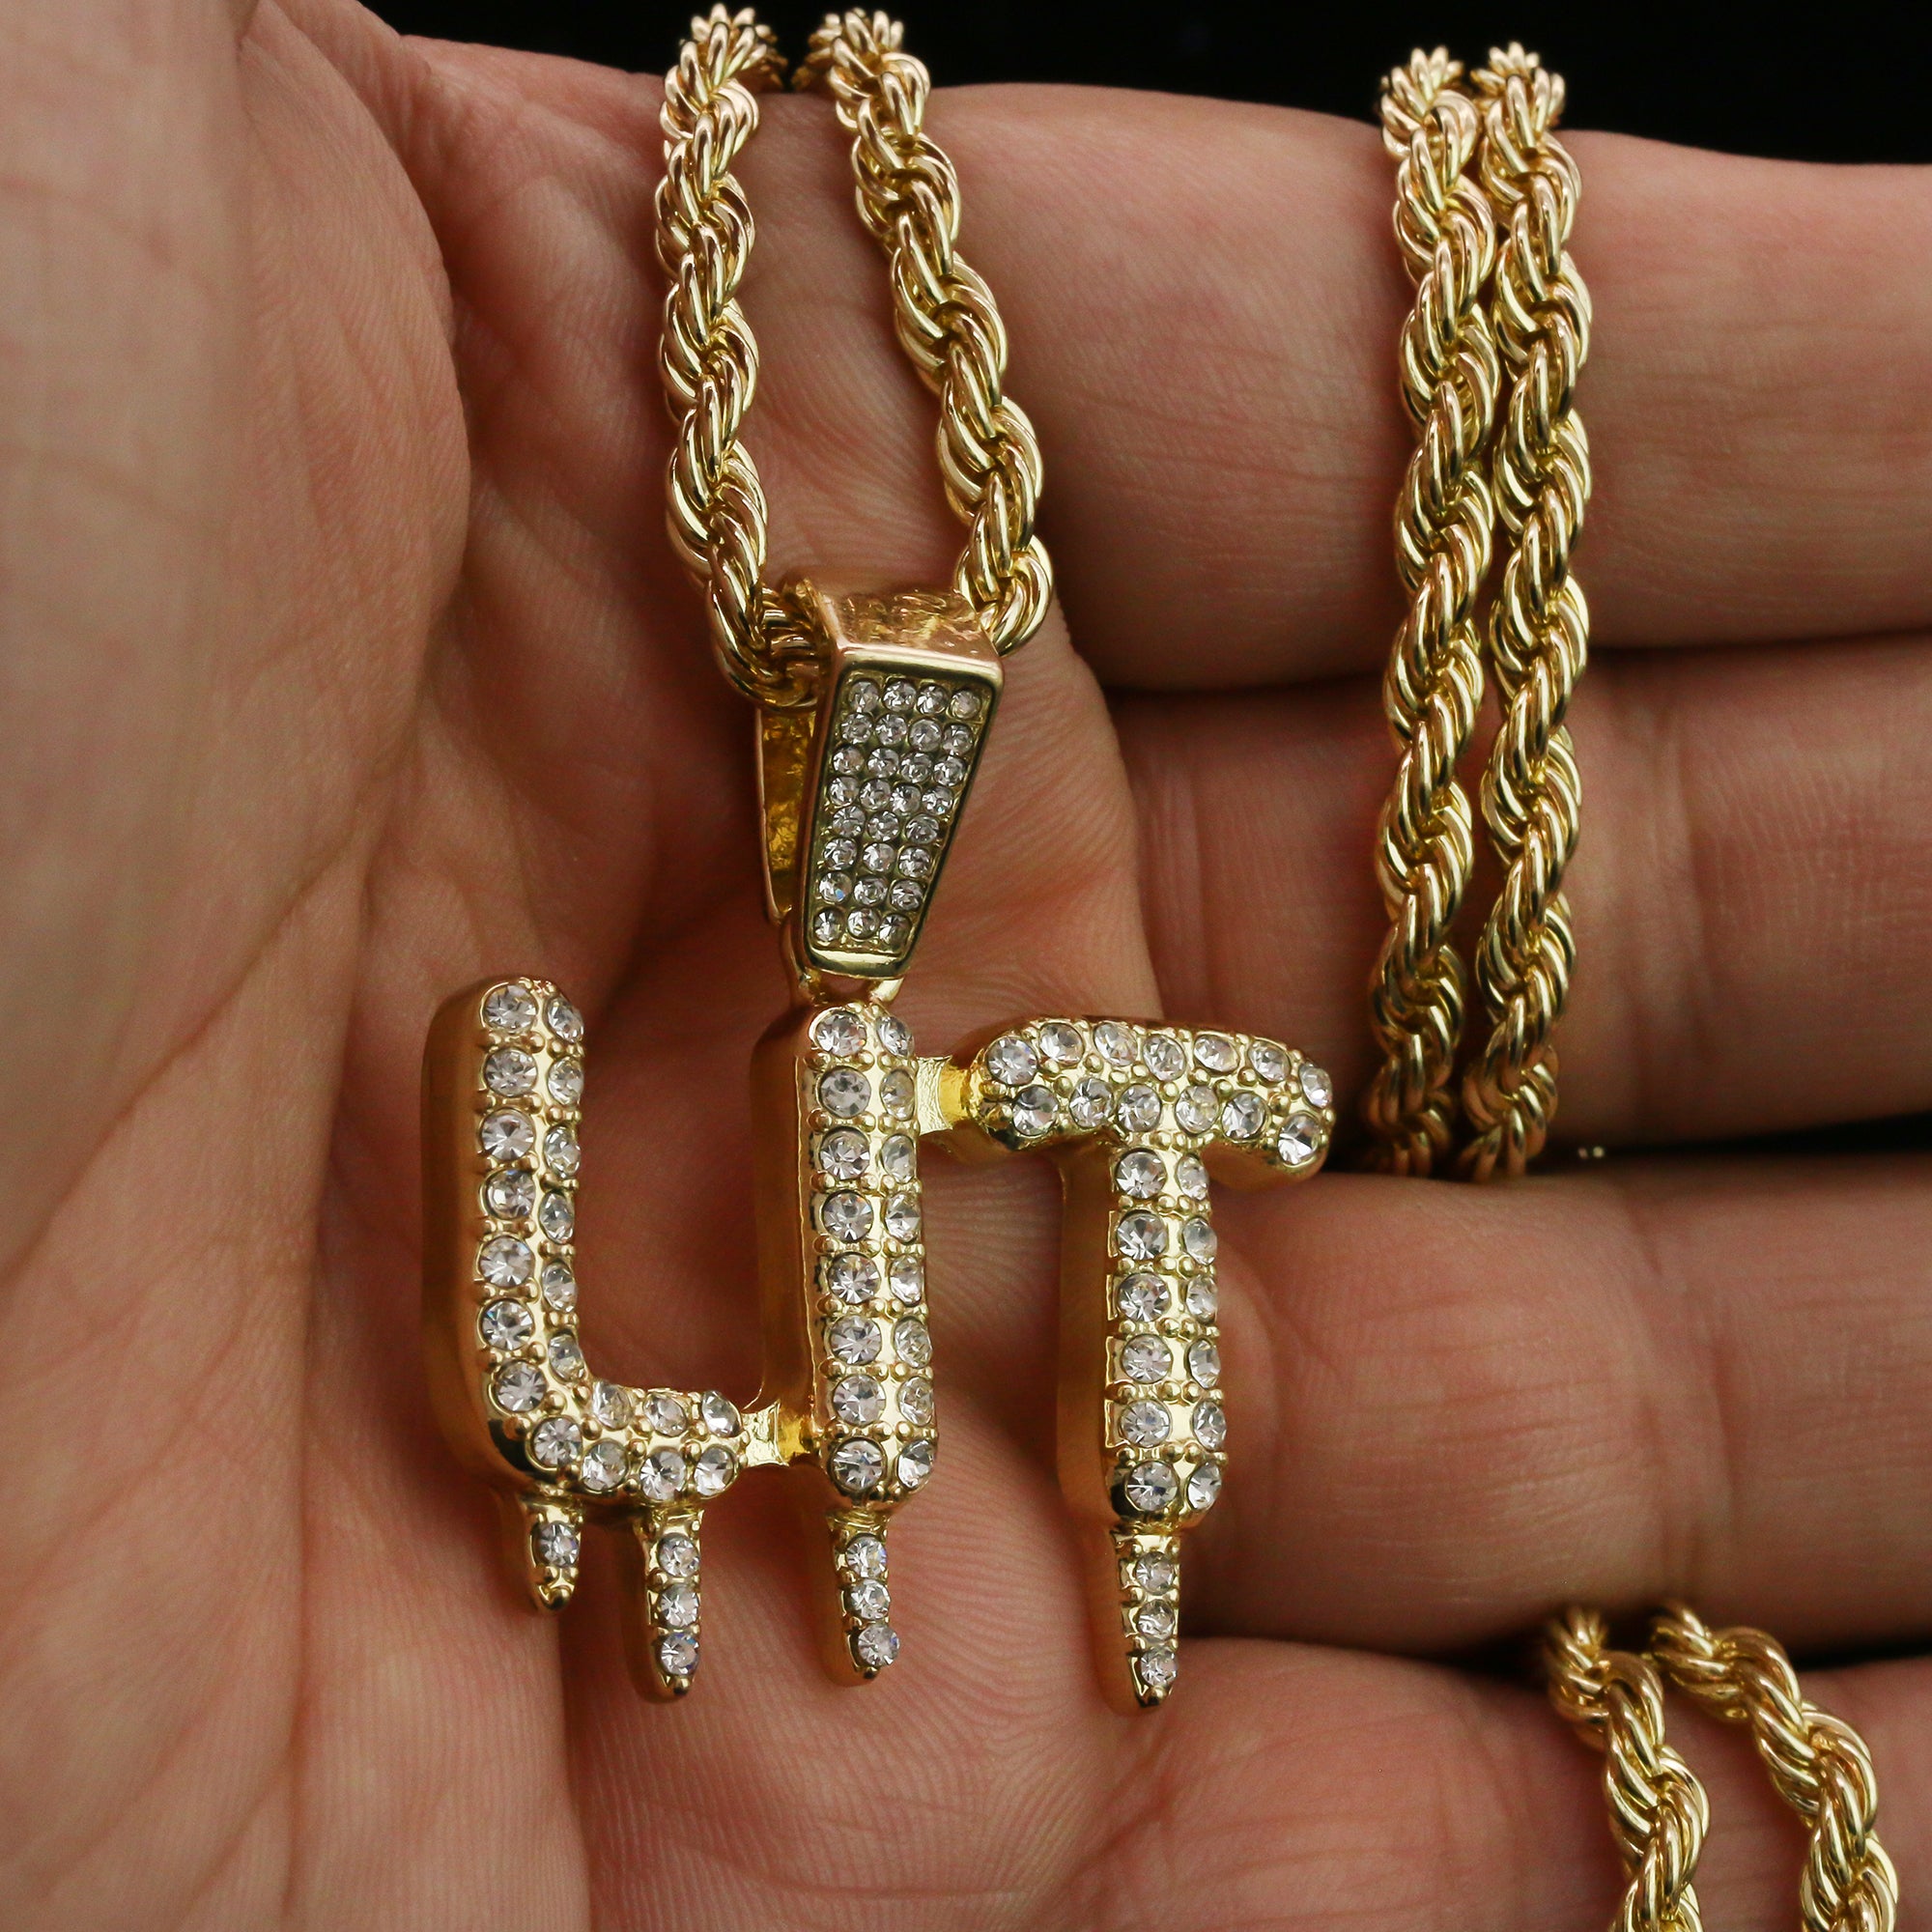 LIT Drip Letter Pendant Rope Chain Men's Hip Hop 18k Cz Jewelry Necklace